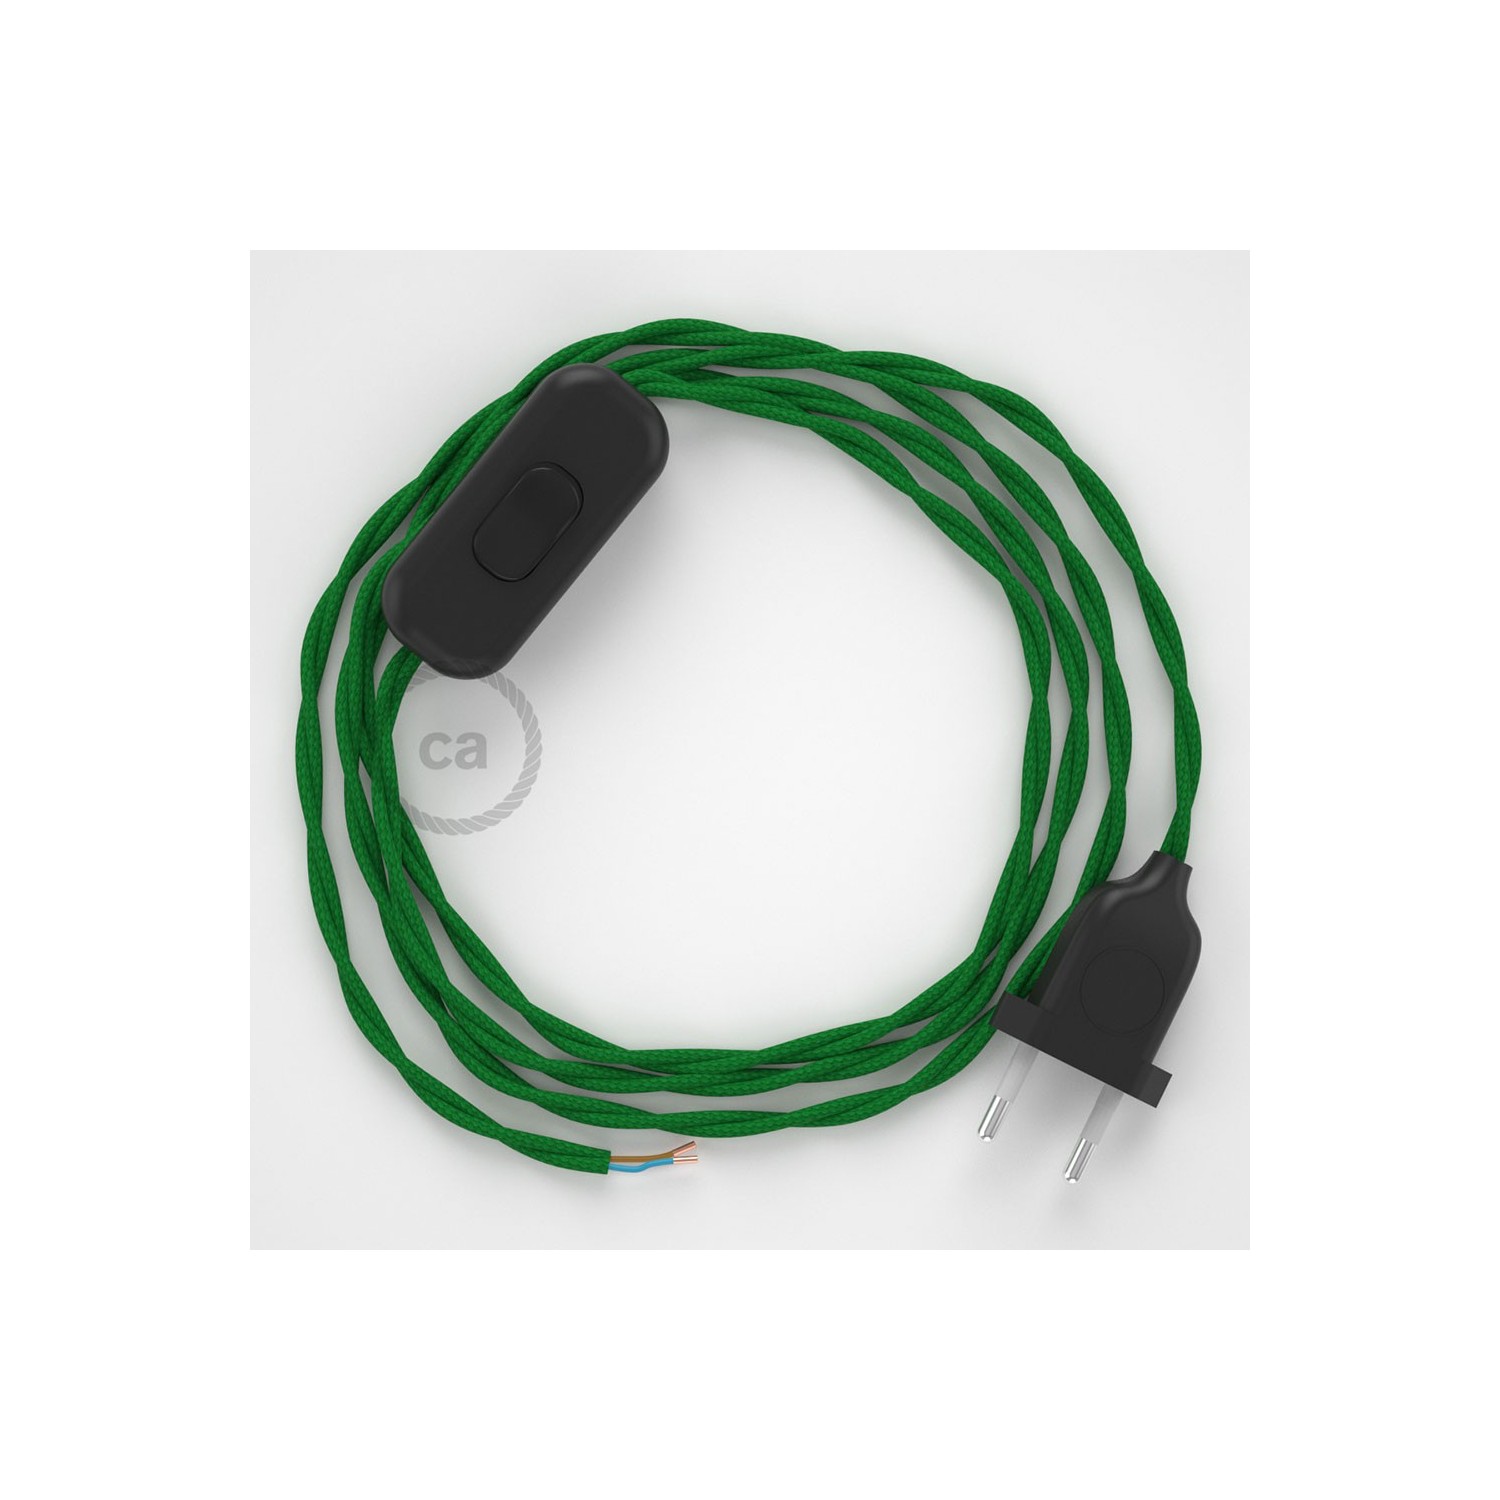 Sladdställ, TM06 Grön Viskos 1,80 m. Välj färg på strömbrytare och kontakt